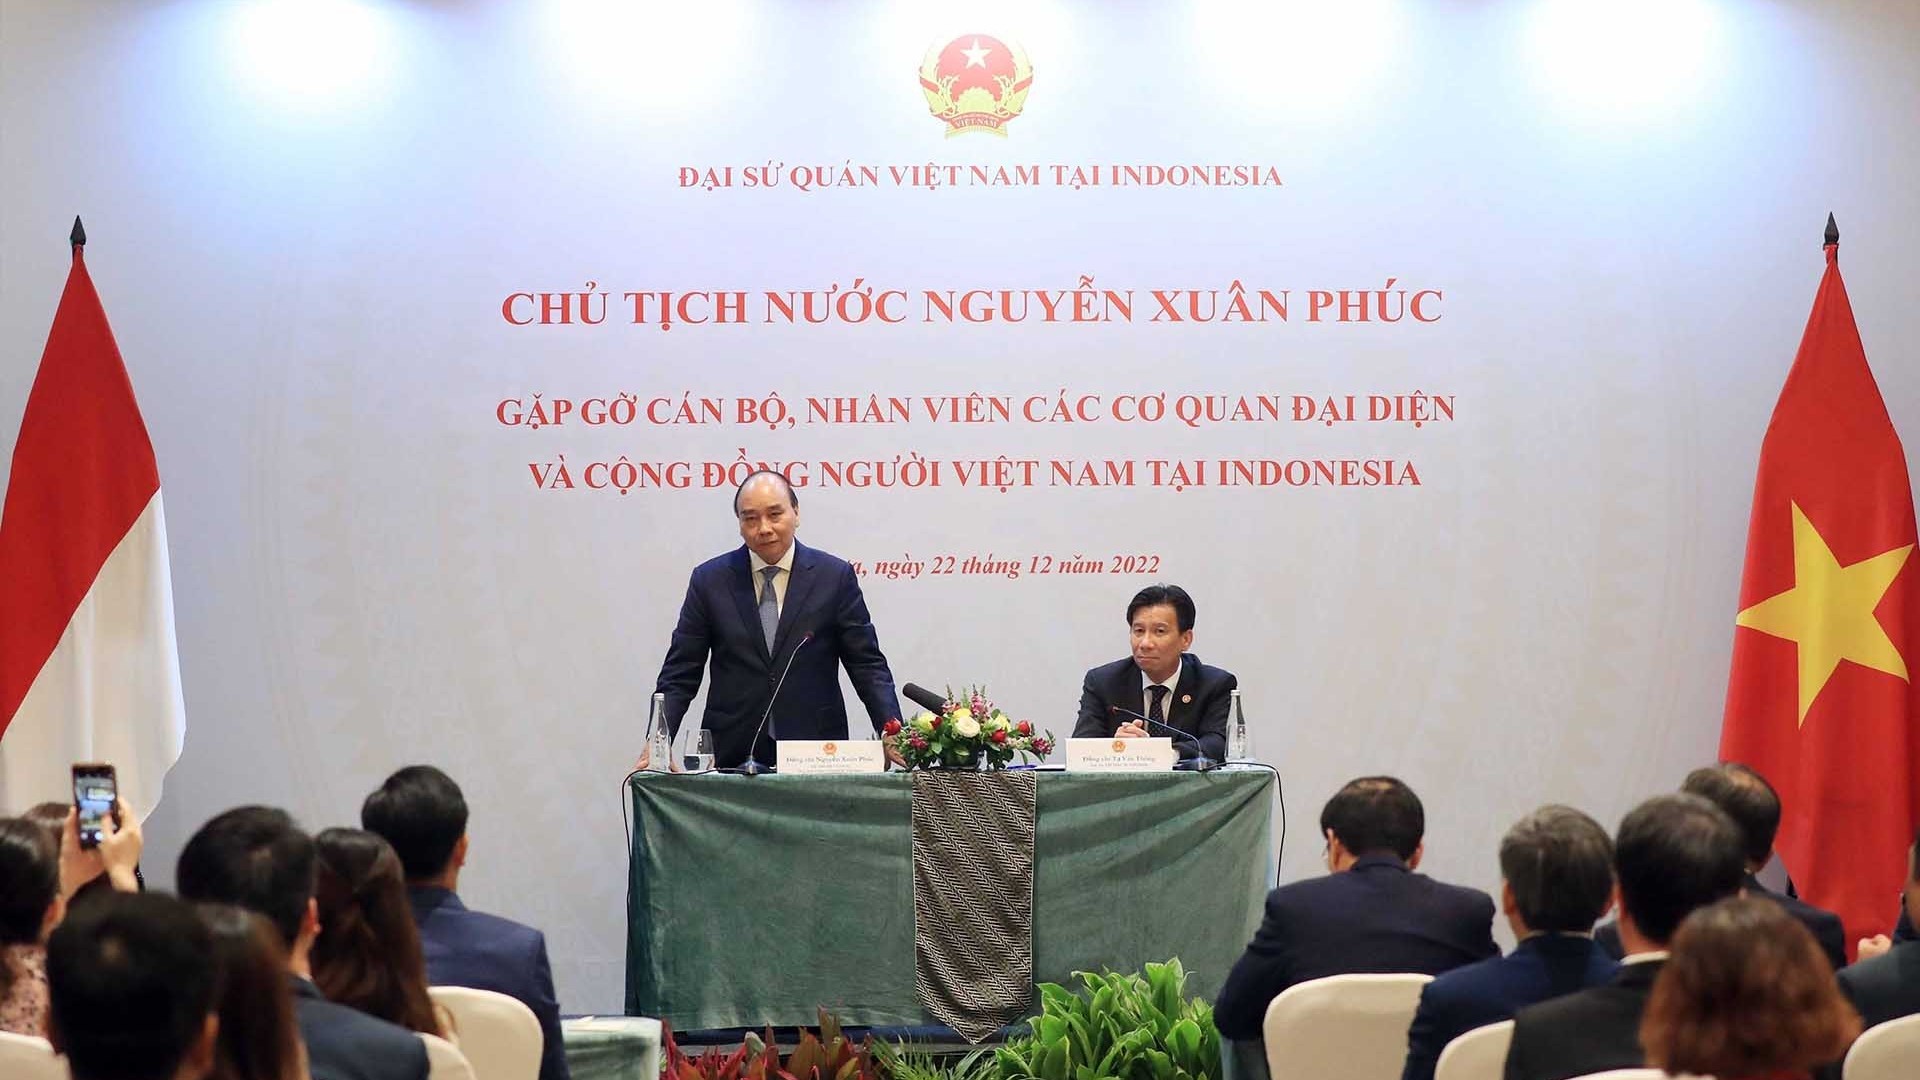 Chủ tịch nước mong muốn kiều bào, các doanh nghiệp Việt Nam tại Indonesia thúc đẩy hợp tác thương mại hai nước